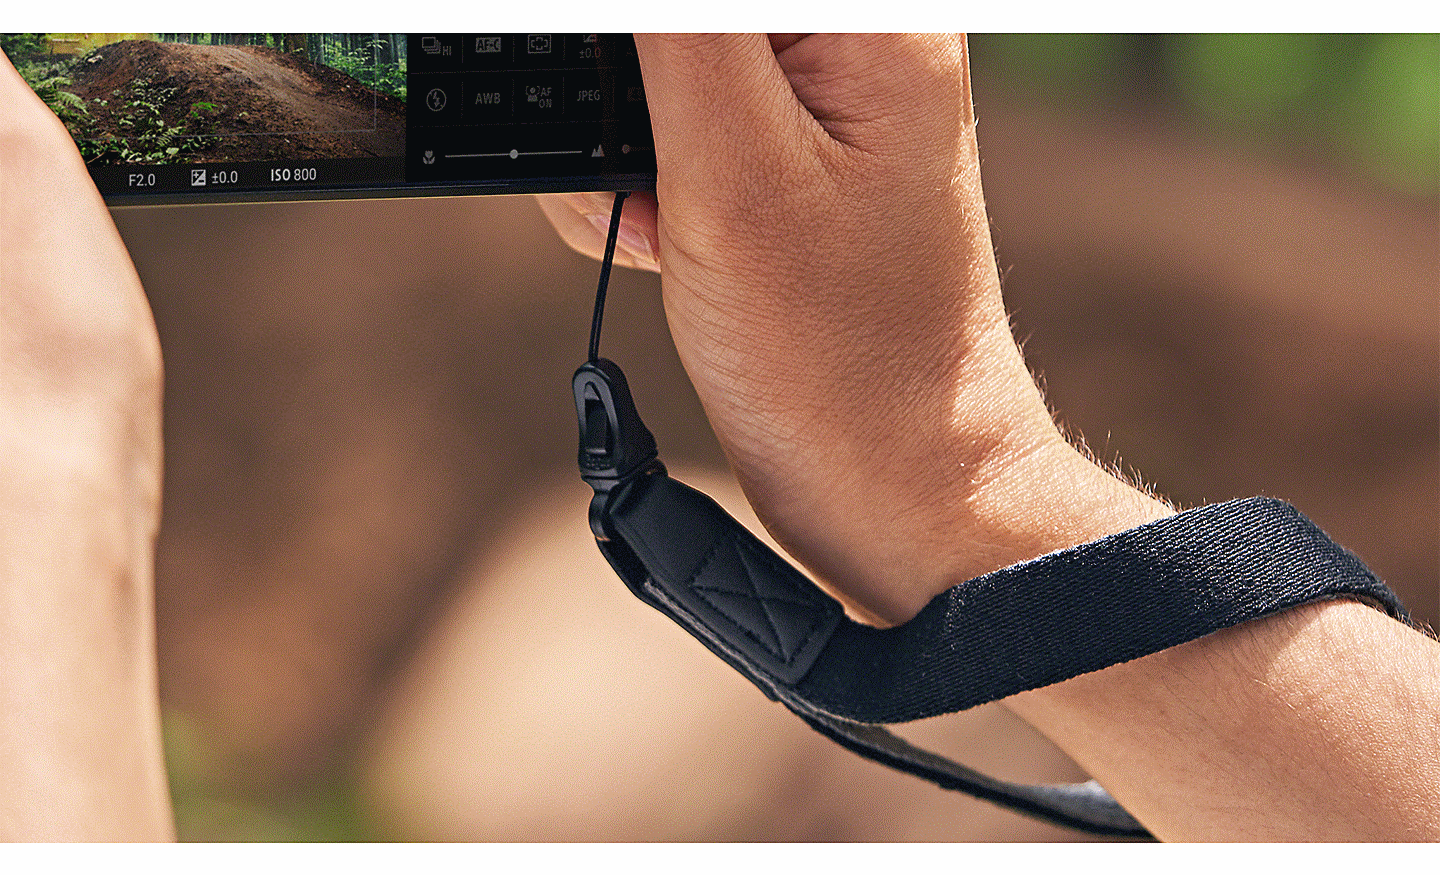 Ruce držící smartphone Xperia PRO-I s řemínkem fotoaparátu okolo zápěstí